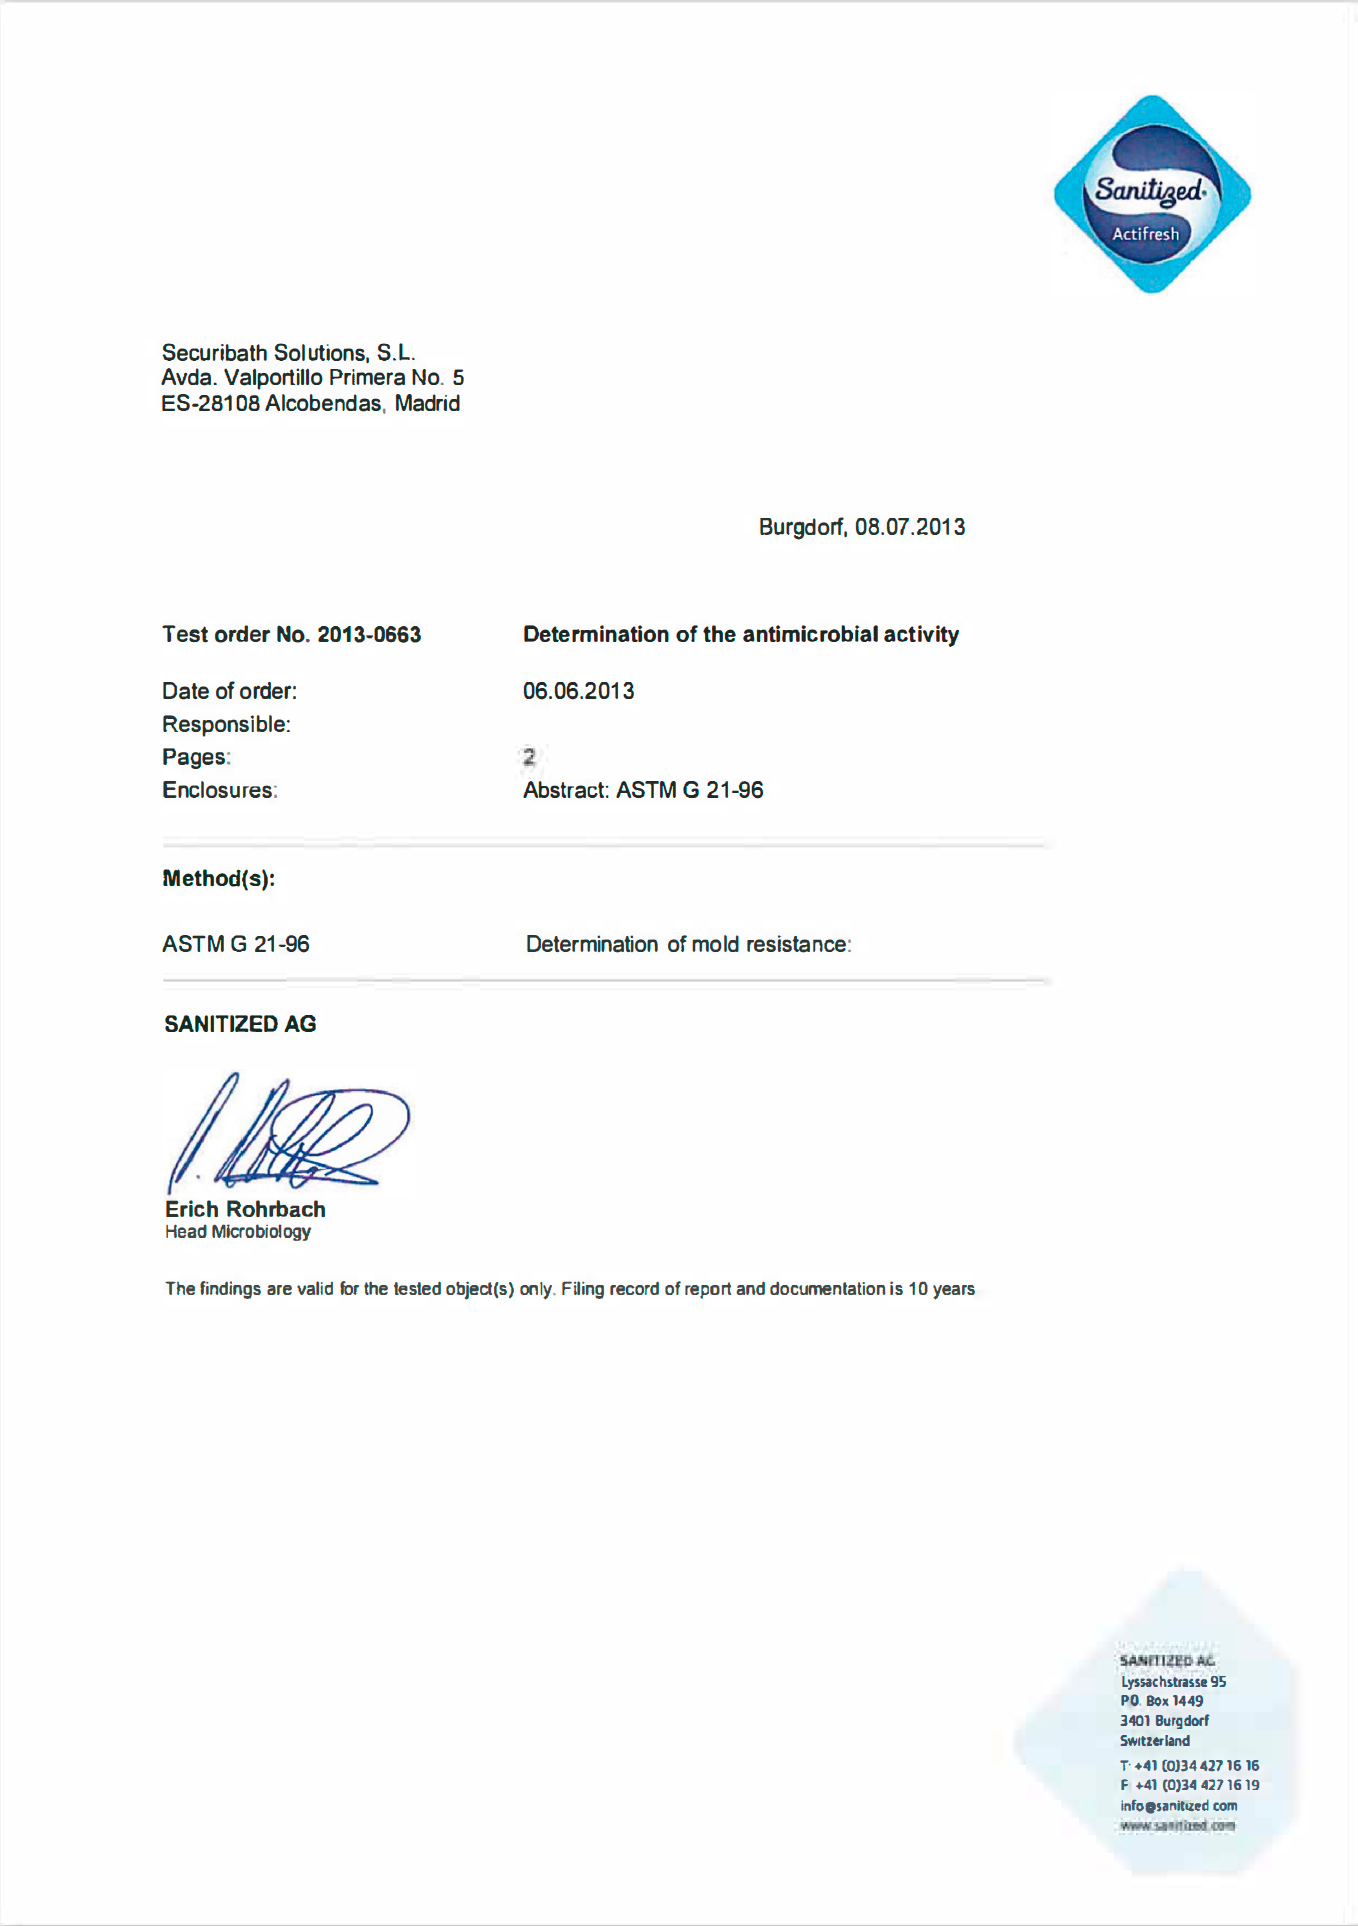 Documento oficial de la certificación de Sanitiged